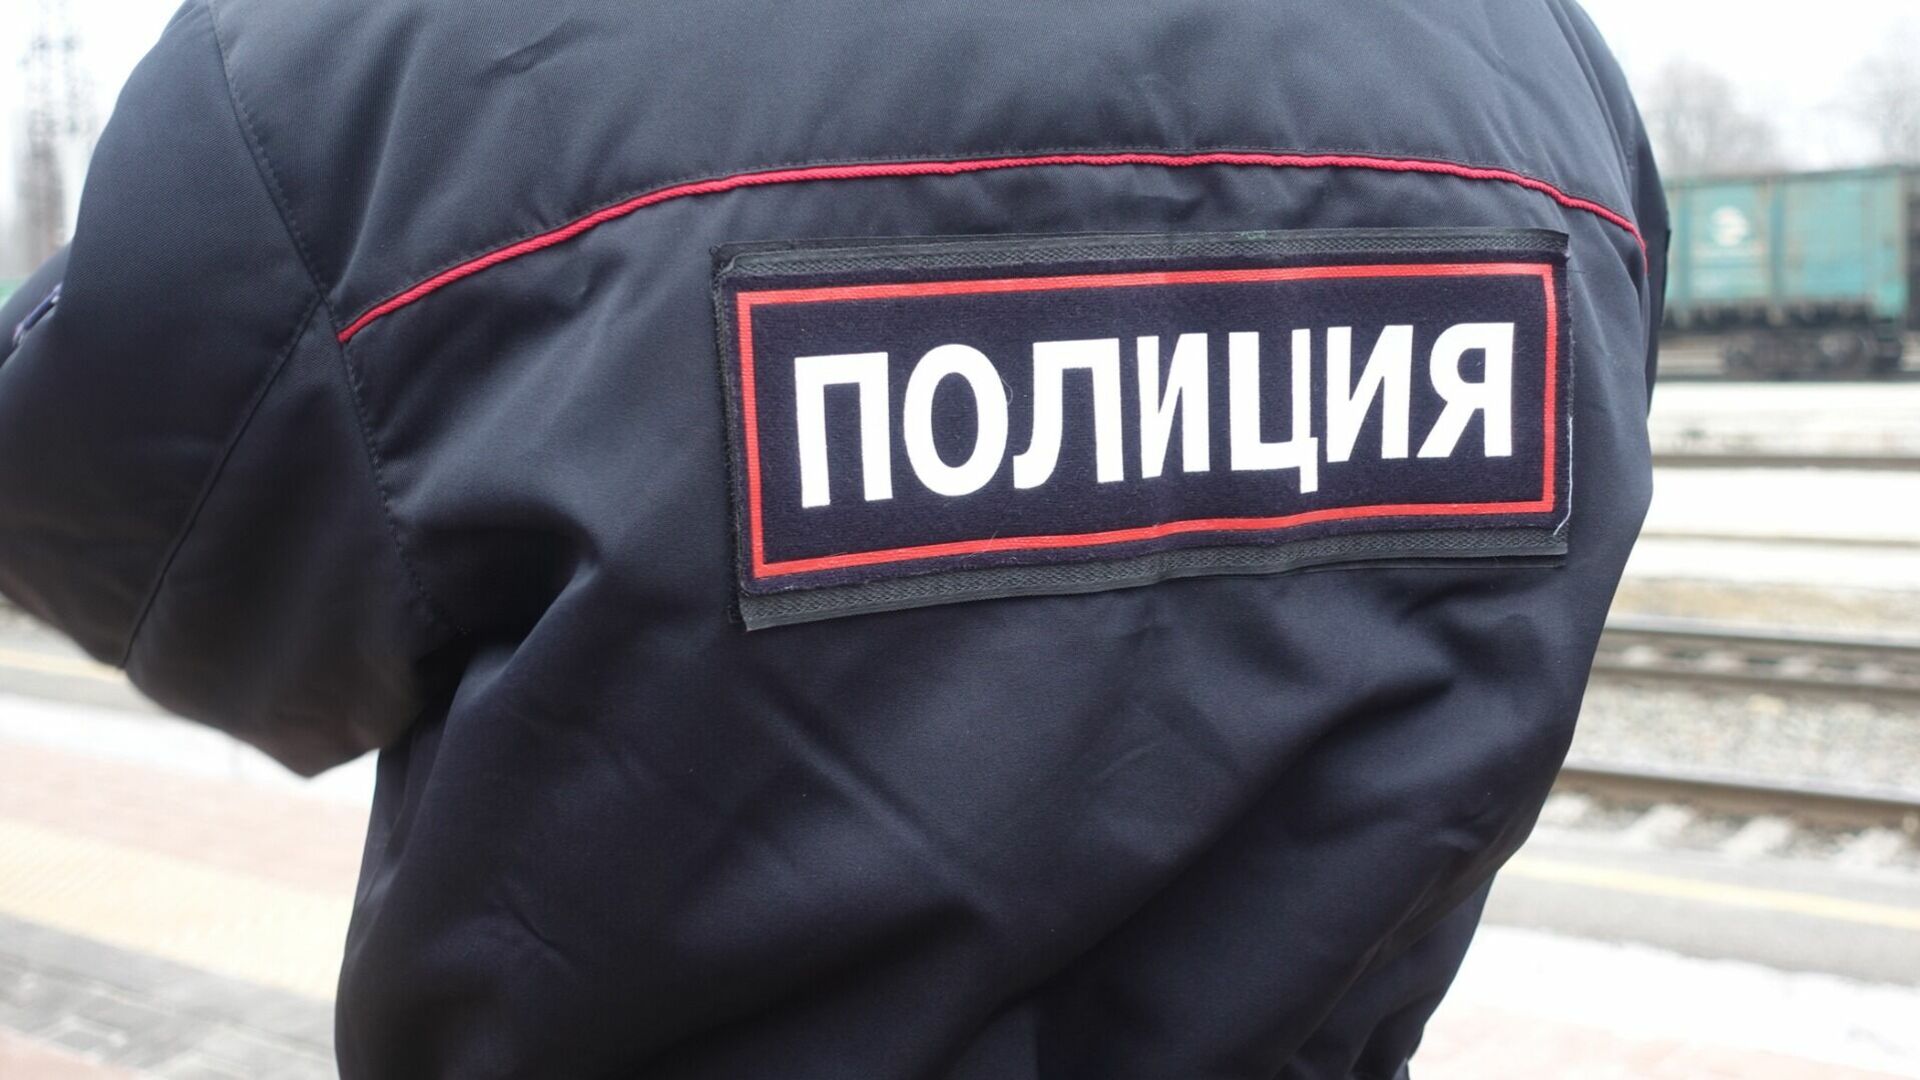 Baza: в Ростовской области задним числом уволили убитого сотрудника полиции